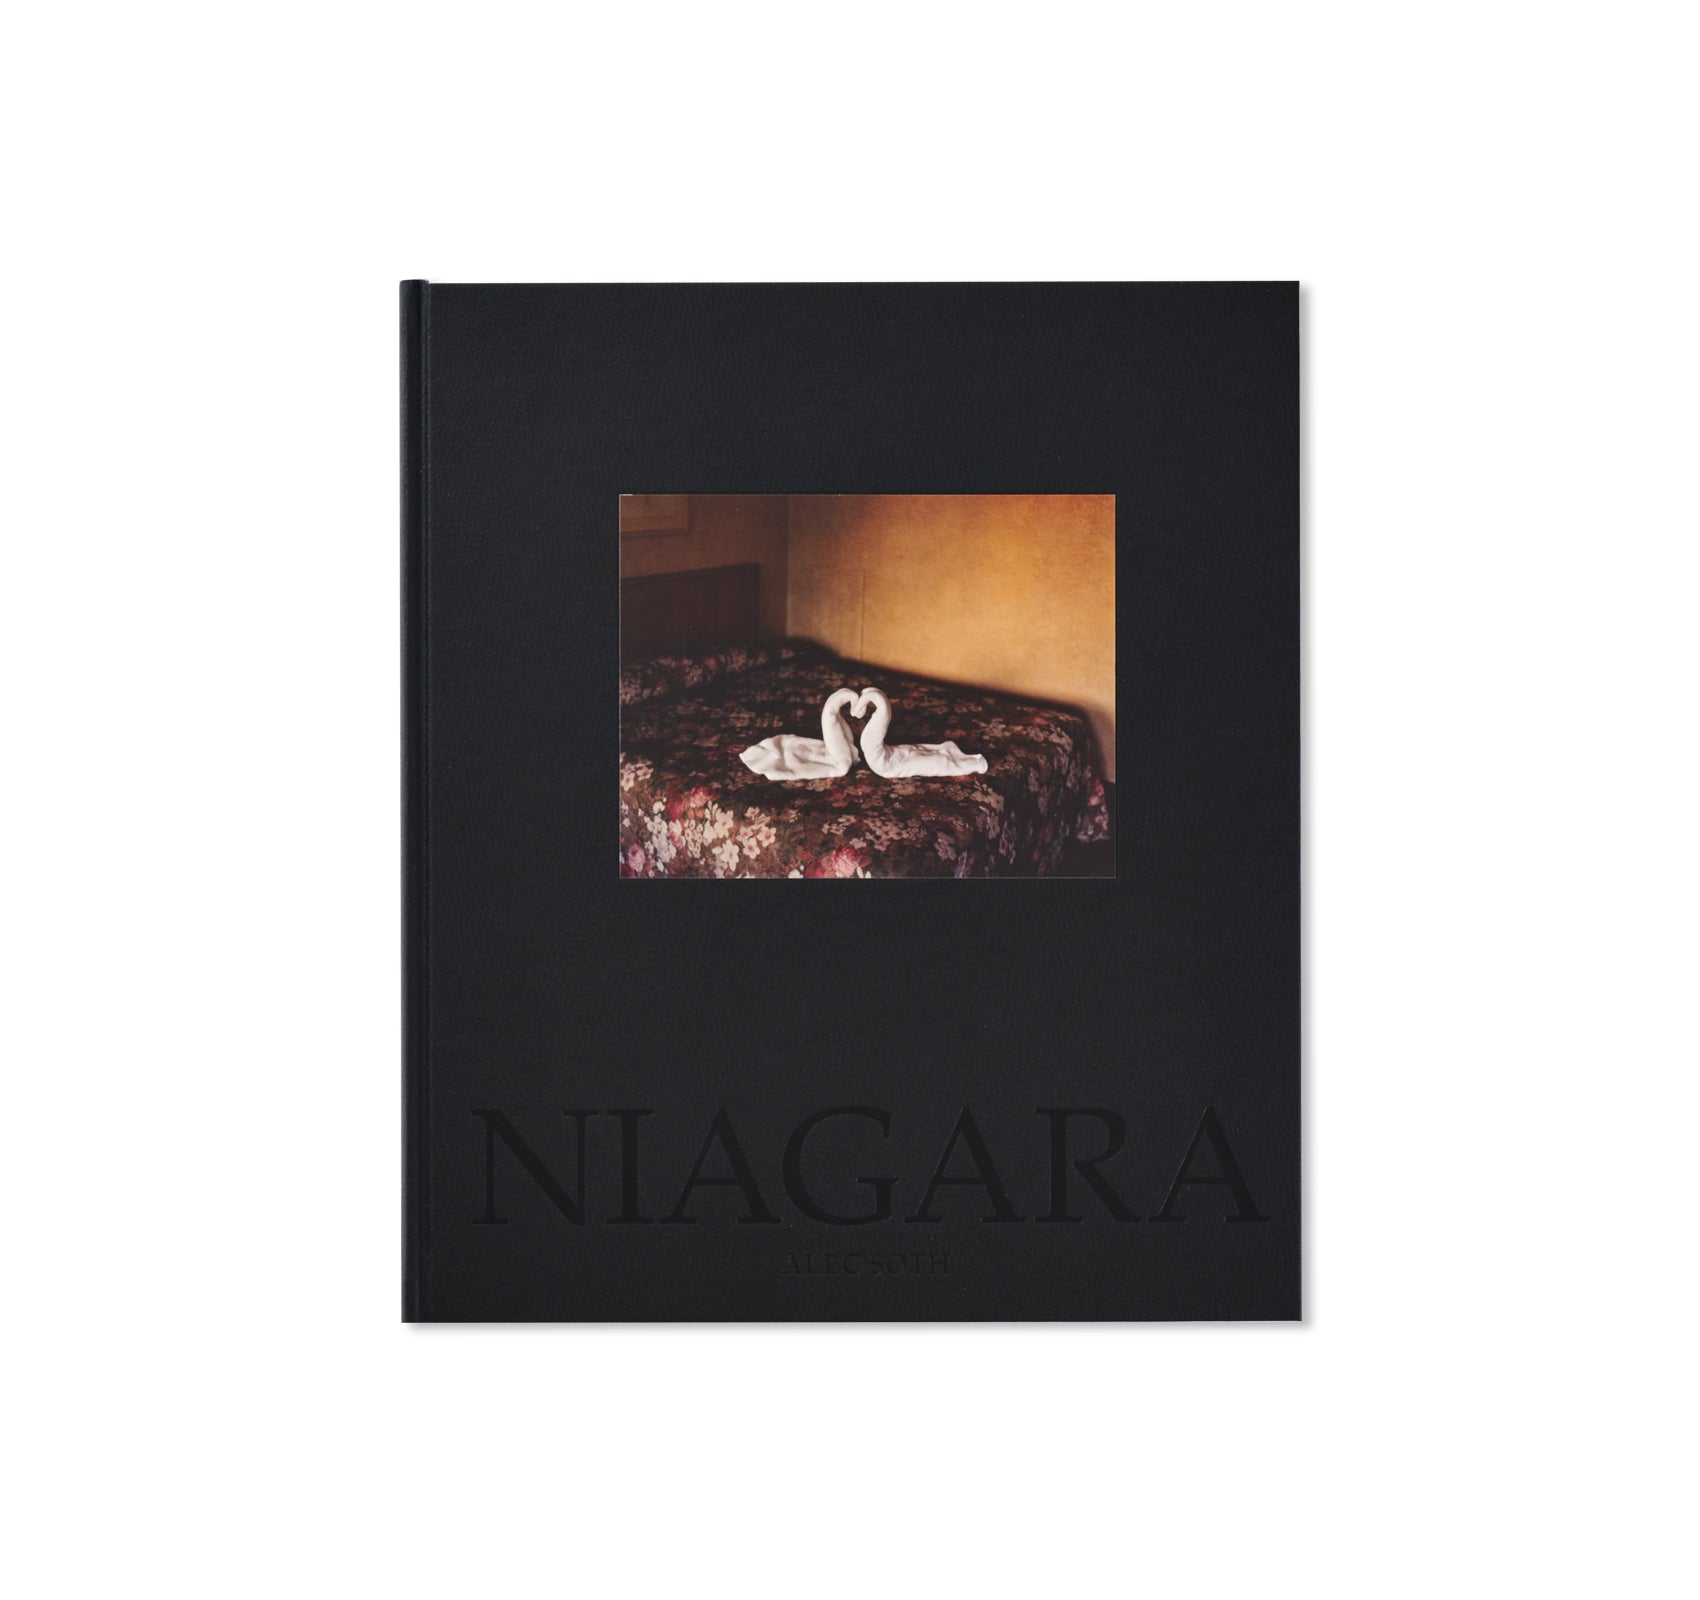 NIAGARA by Alec Soth [SPECIAL EDITION]